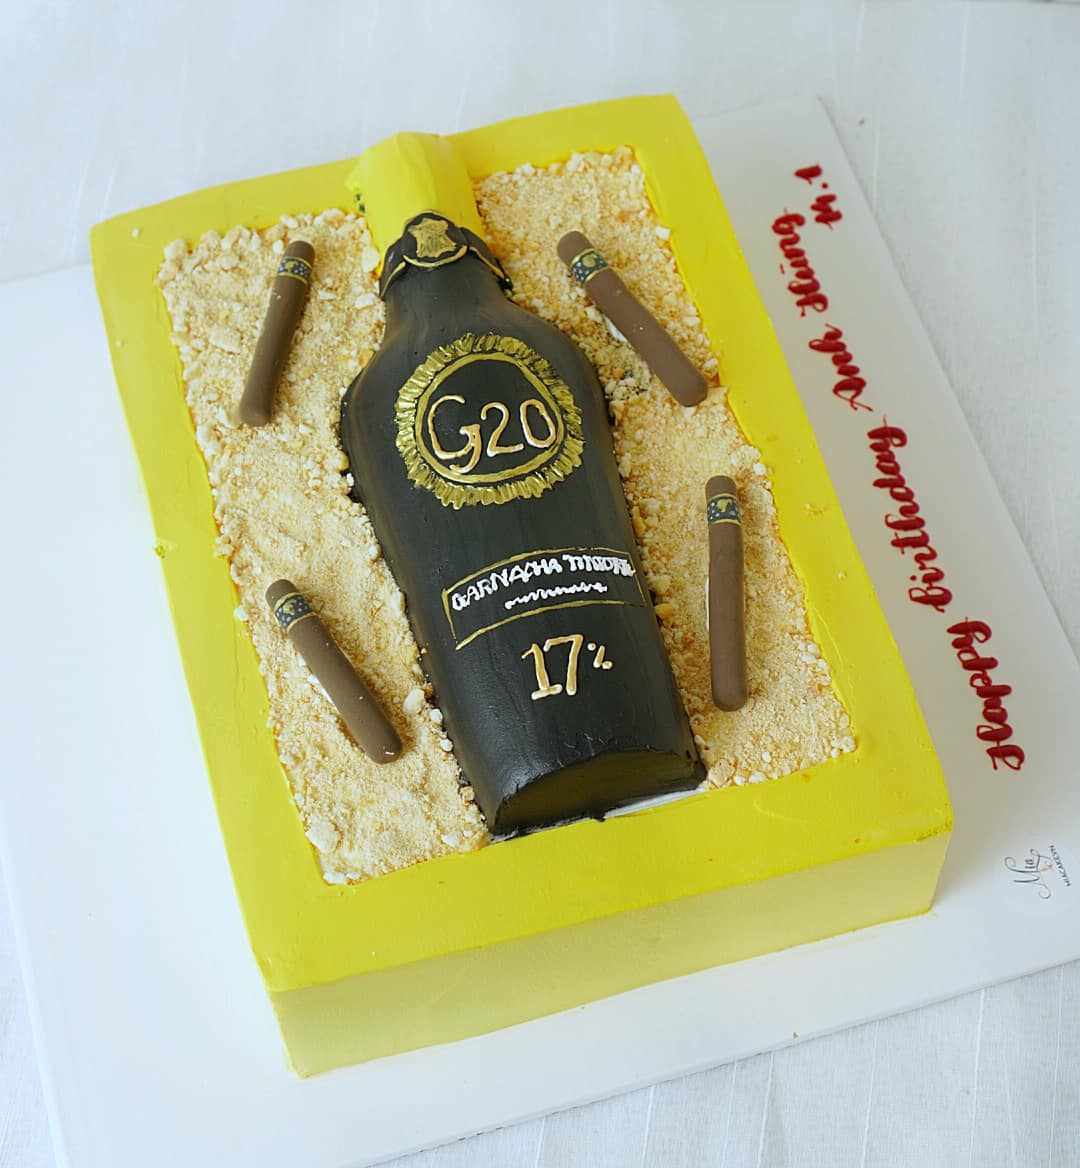 BRB1  Bánh sinh nhật Rượu vang sang trọng sz16 cao 10cm  Tokyo Gateaux   Đặt bánh lấy ngay tại Hà Nội